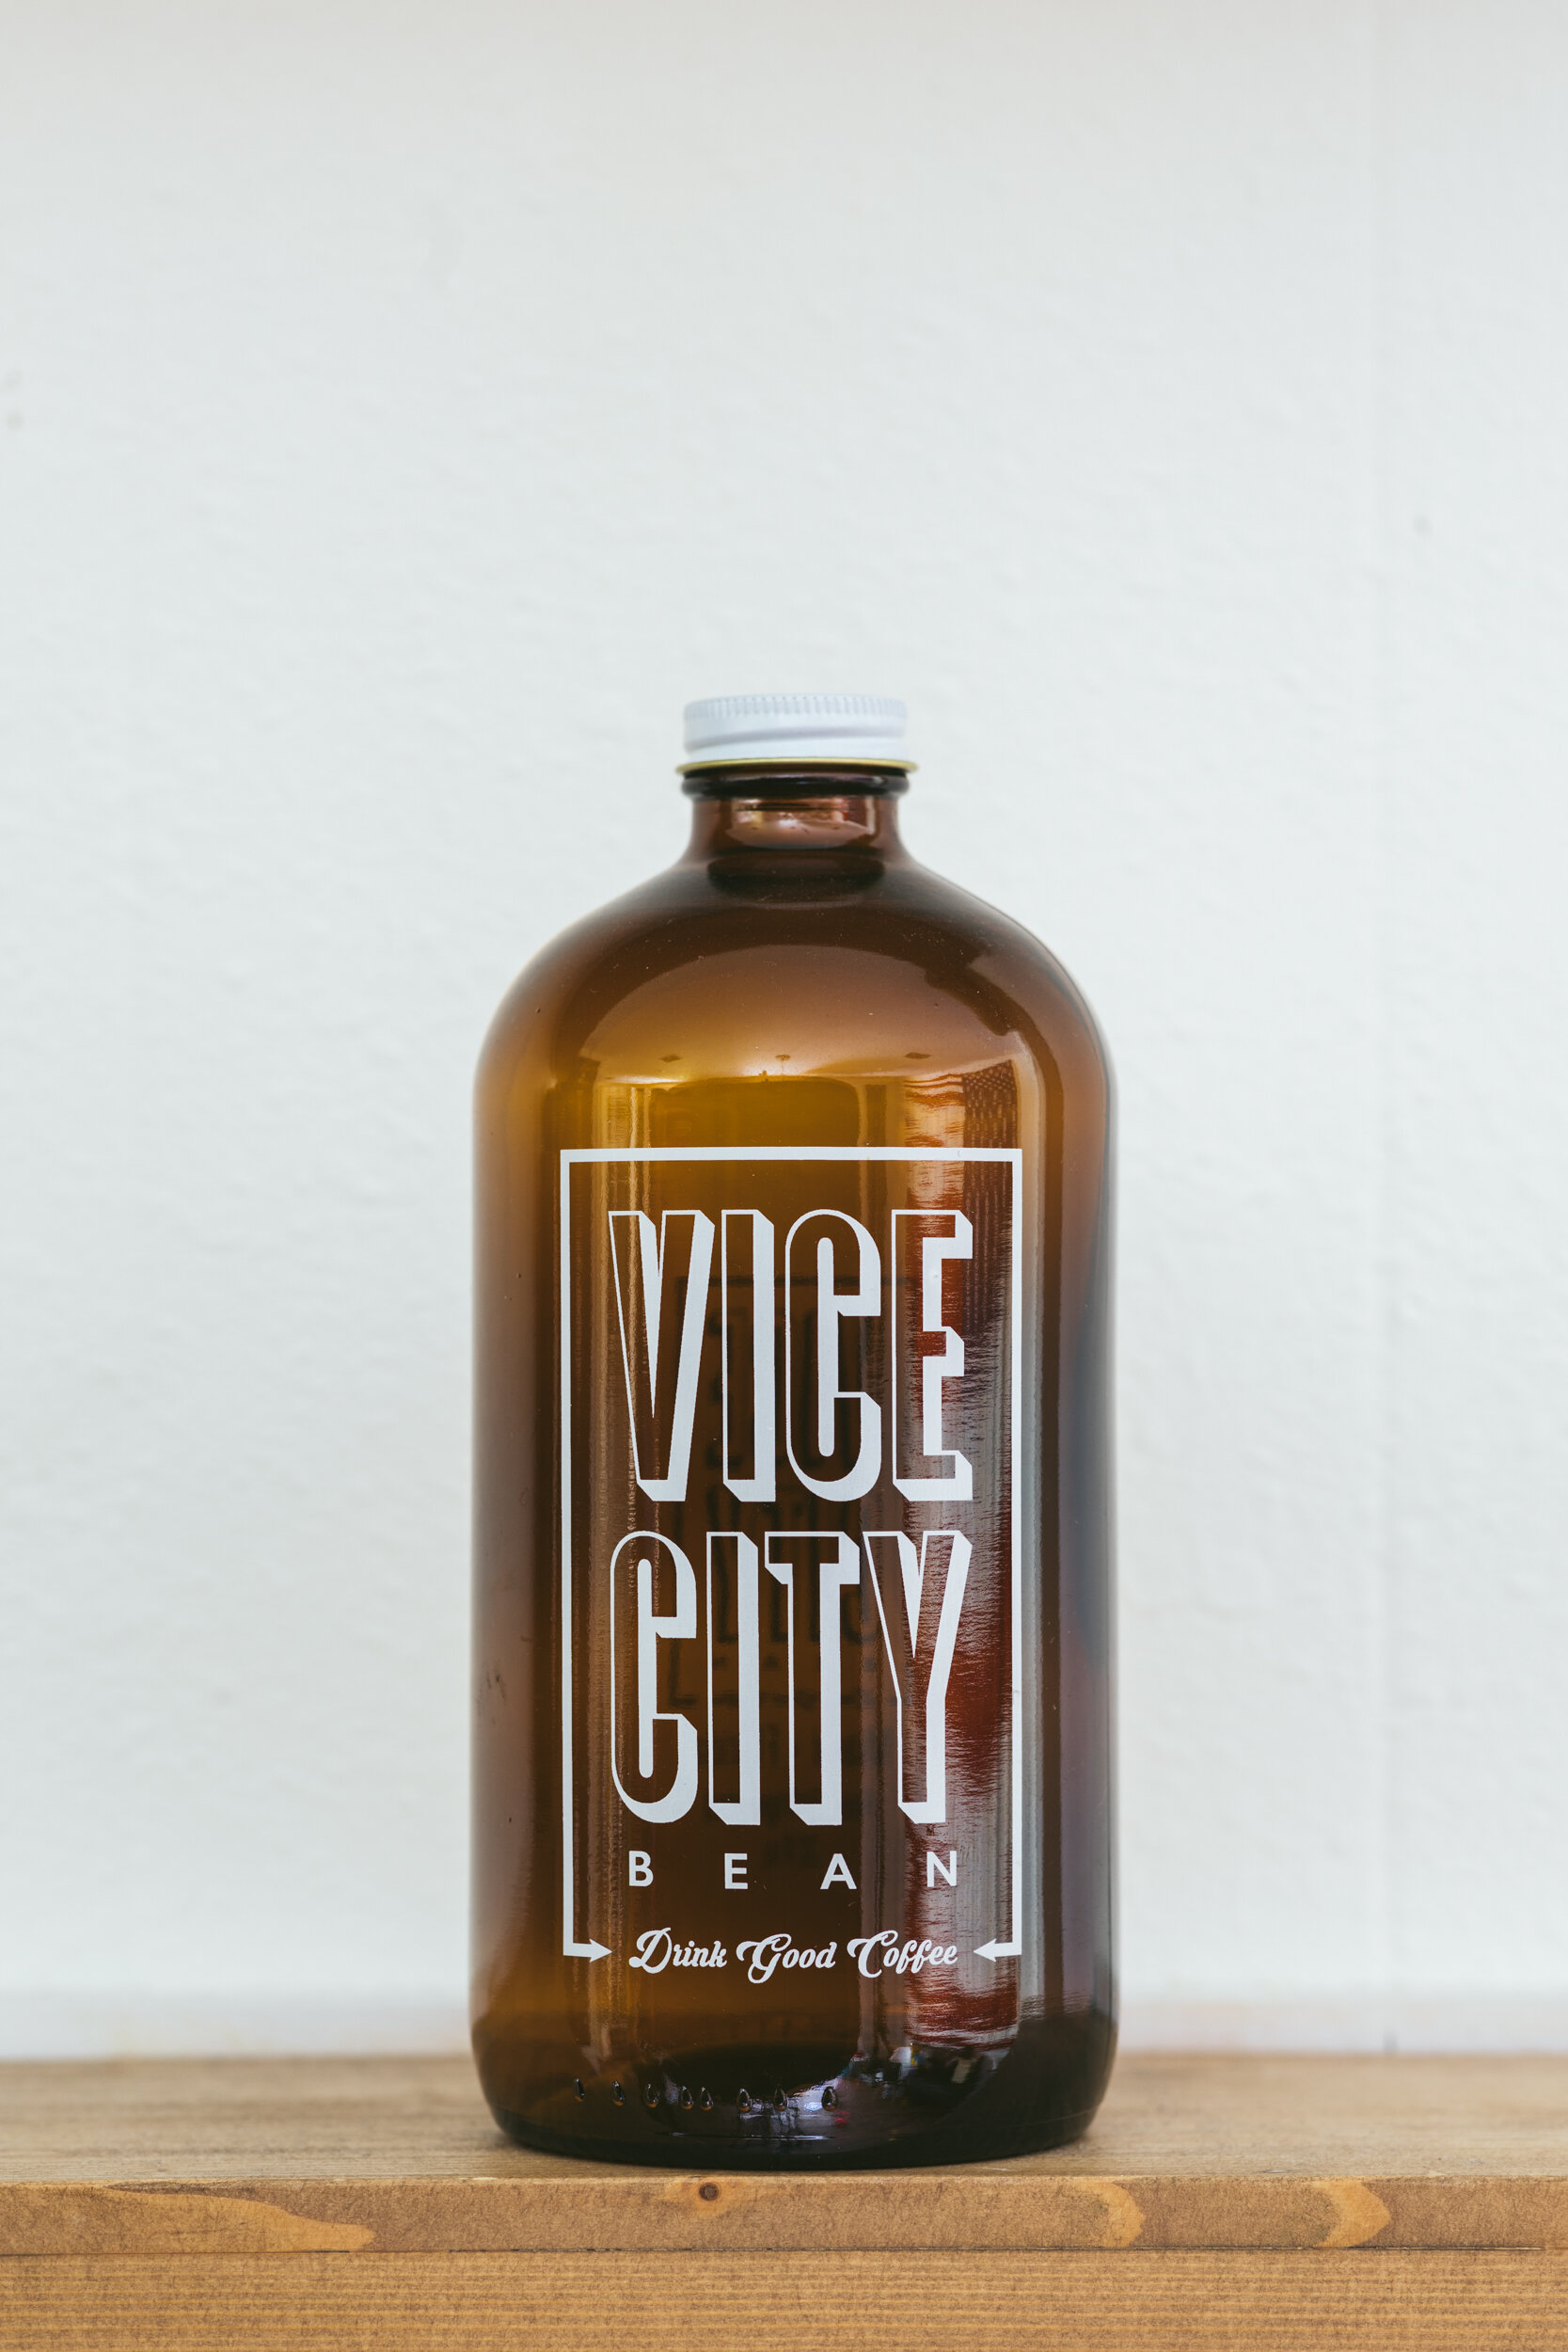 Vice City Bean // Miami, FL